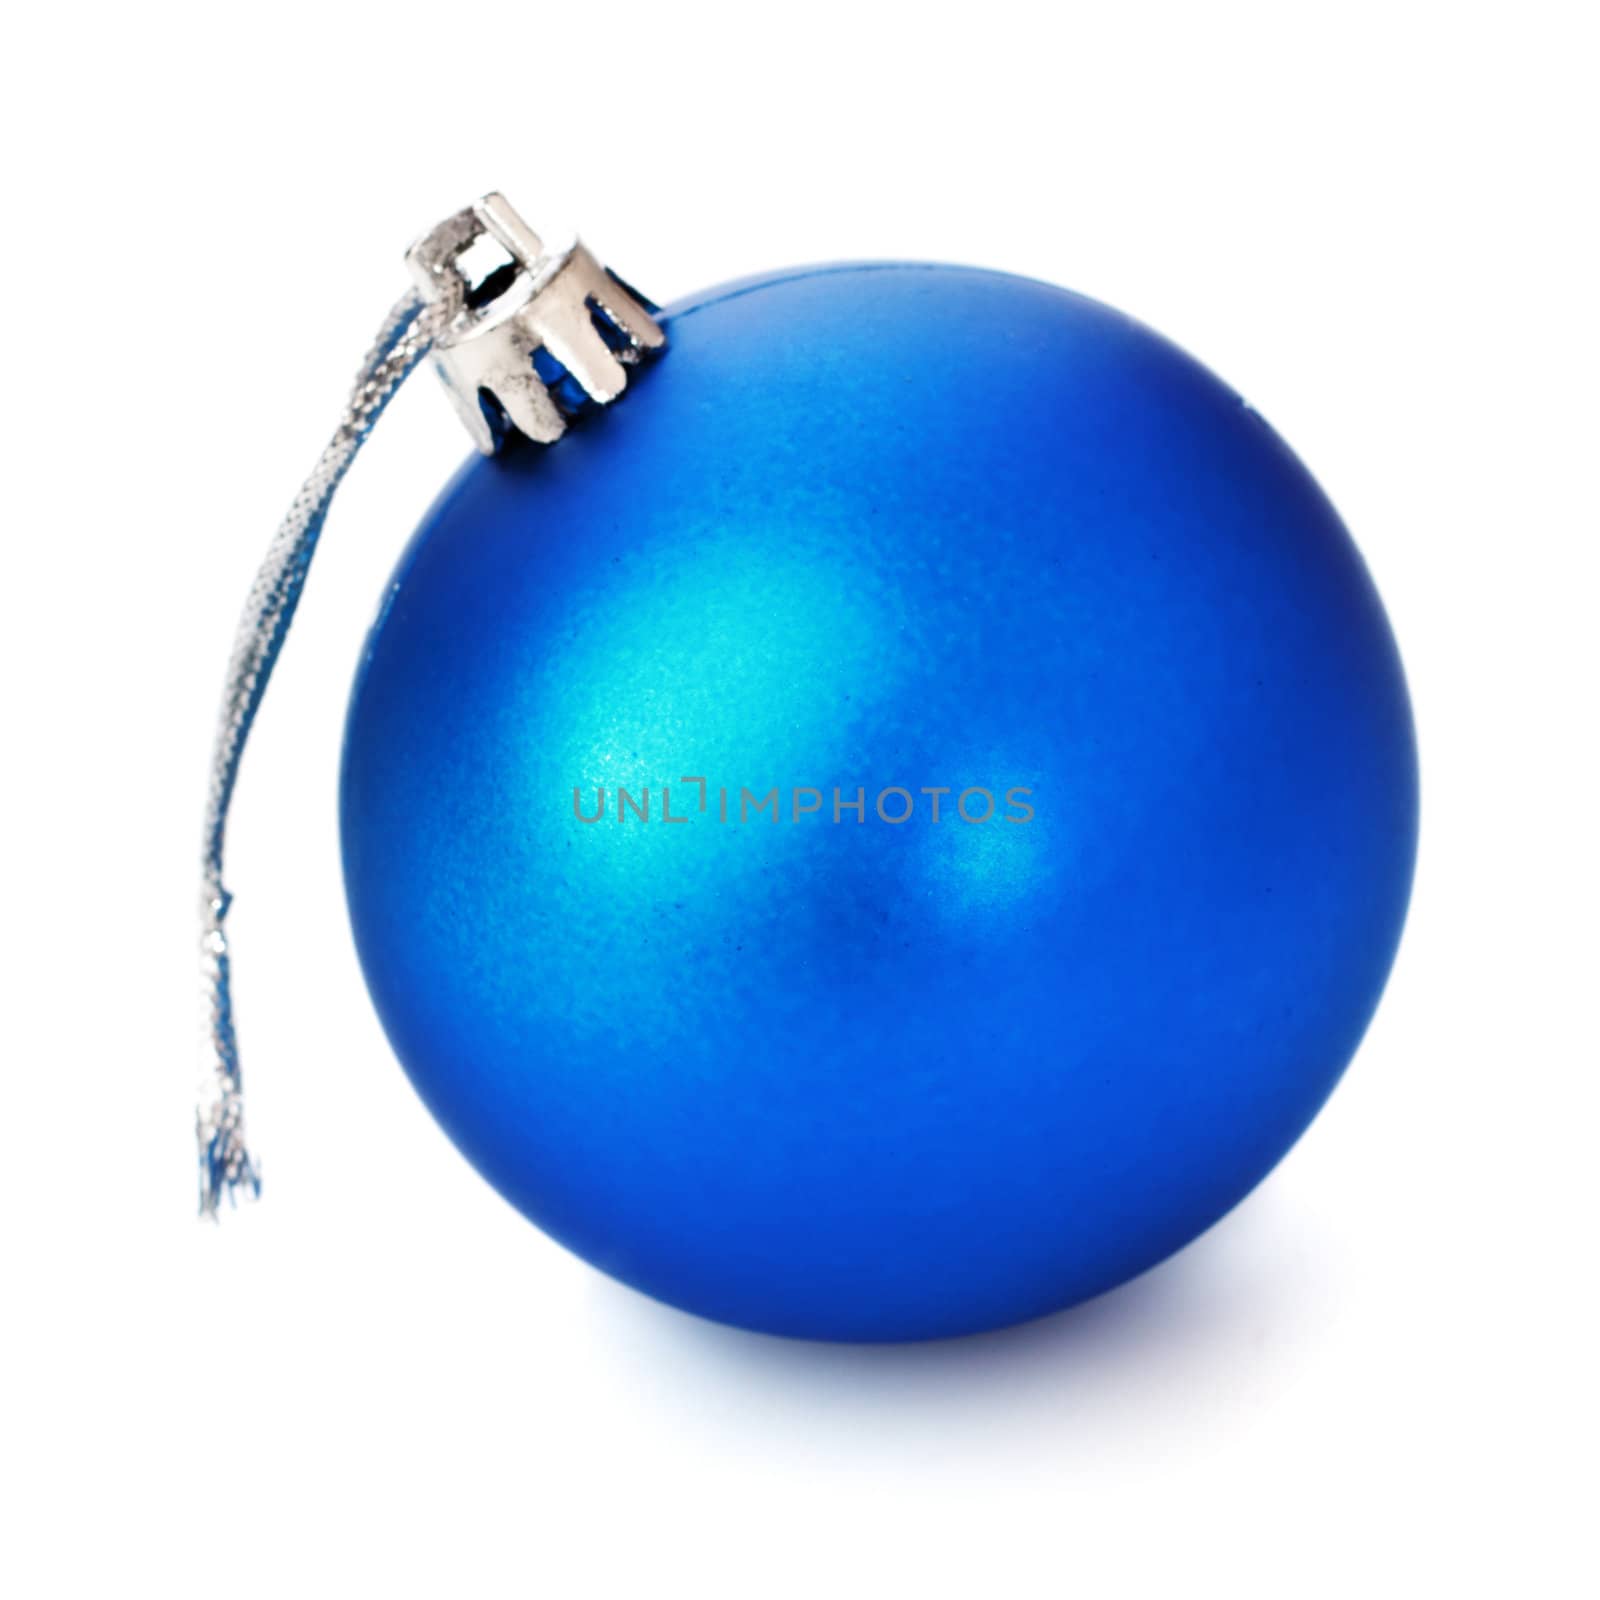 Blue Christmas Ball by petr_malyshev